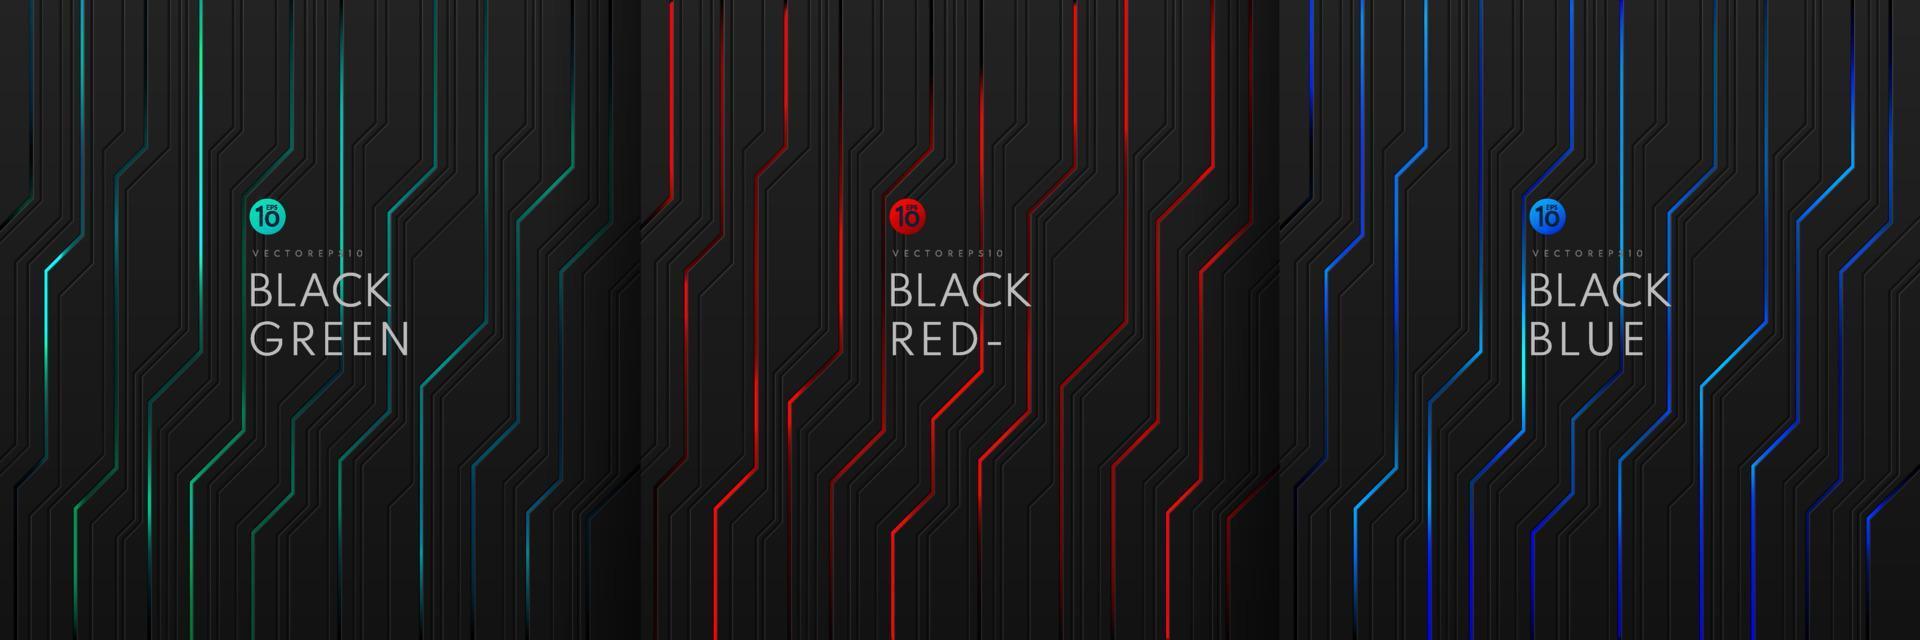 set van dynamisch groen, blauw en rood licht op zwart metallic cyber geometrisch ontwerp in circuitstijl. moderne technologie futuristische donkere achtergrond. ontwerp voor banner, dekking, web, flyer. vectoreps10 vector